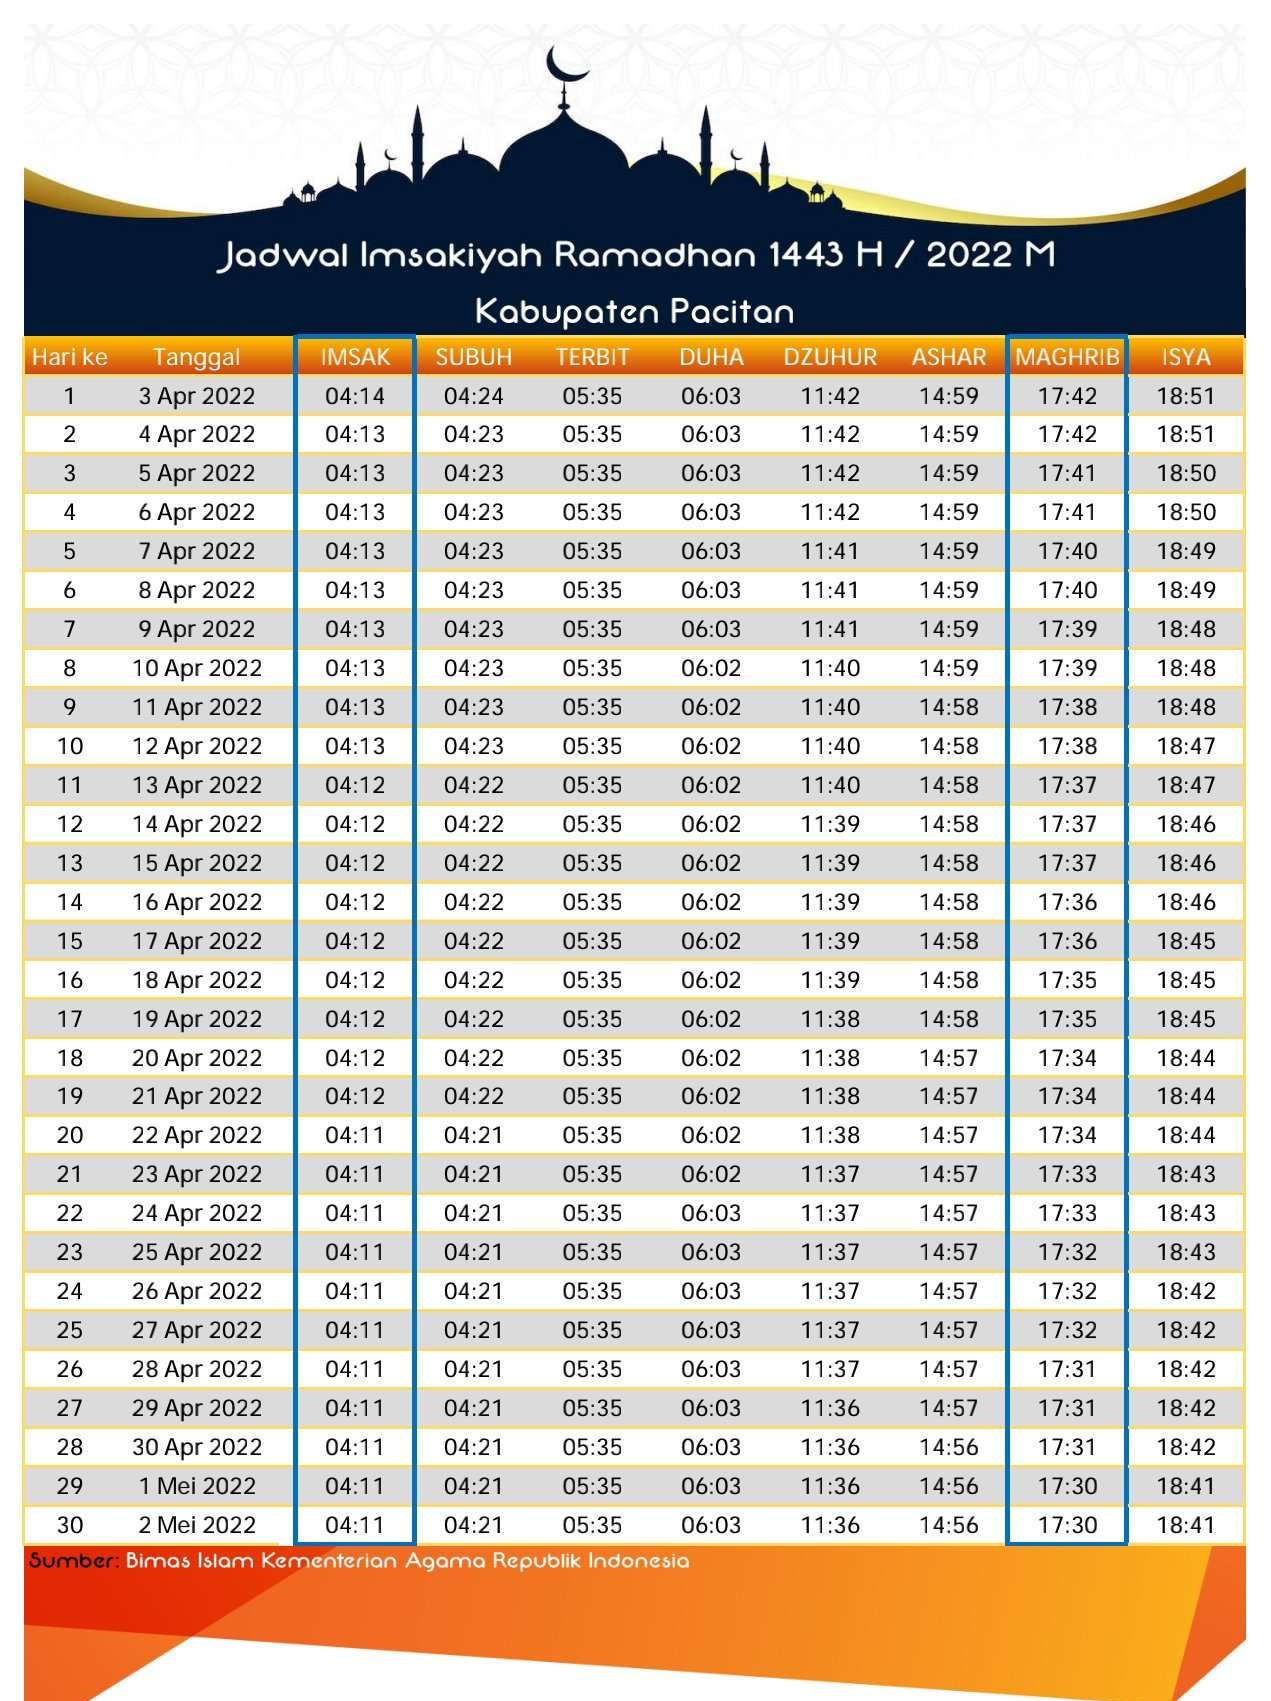 Jadwal Imsakiyah Ramadan 1443 Kabupaten Pacitan TIMES Indonesia